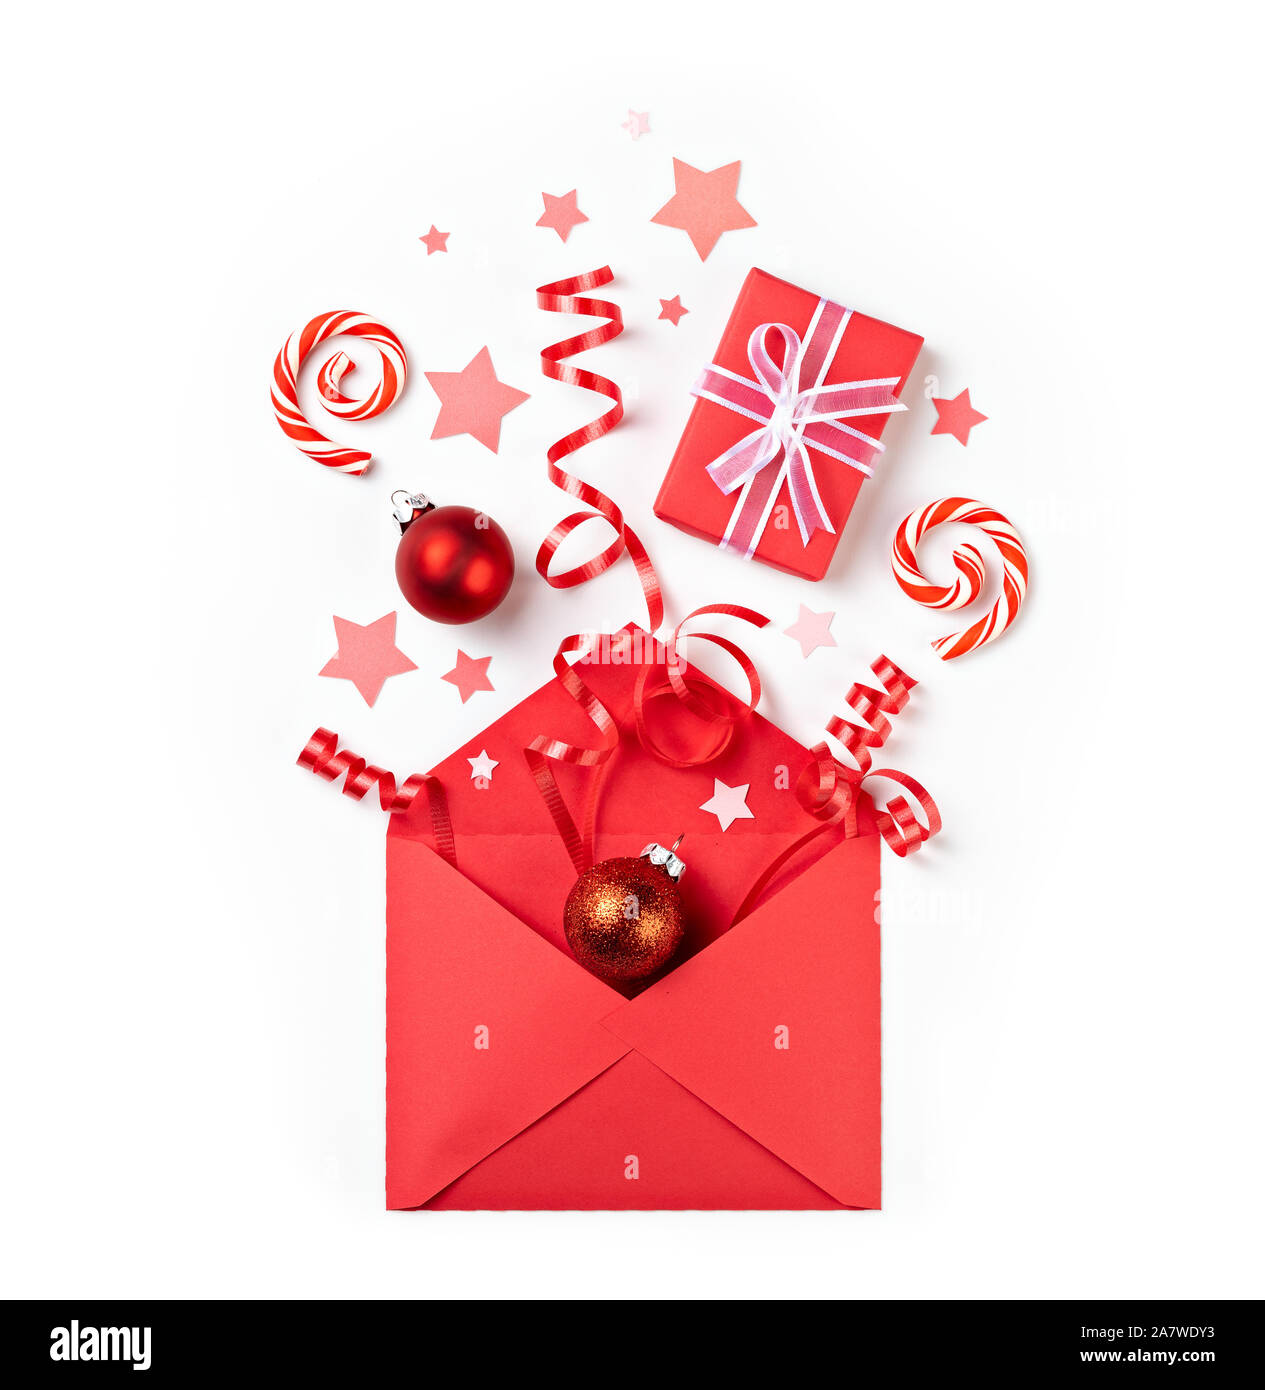 Aprire il Natale regalo a sorpresa busta rossa letter mail esplosione di voci in rosso su sfondo bianco. Foto Stock